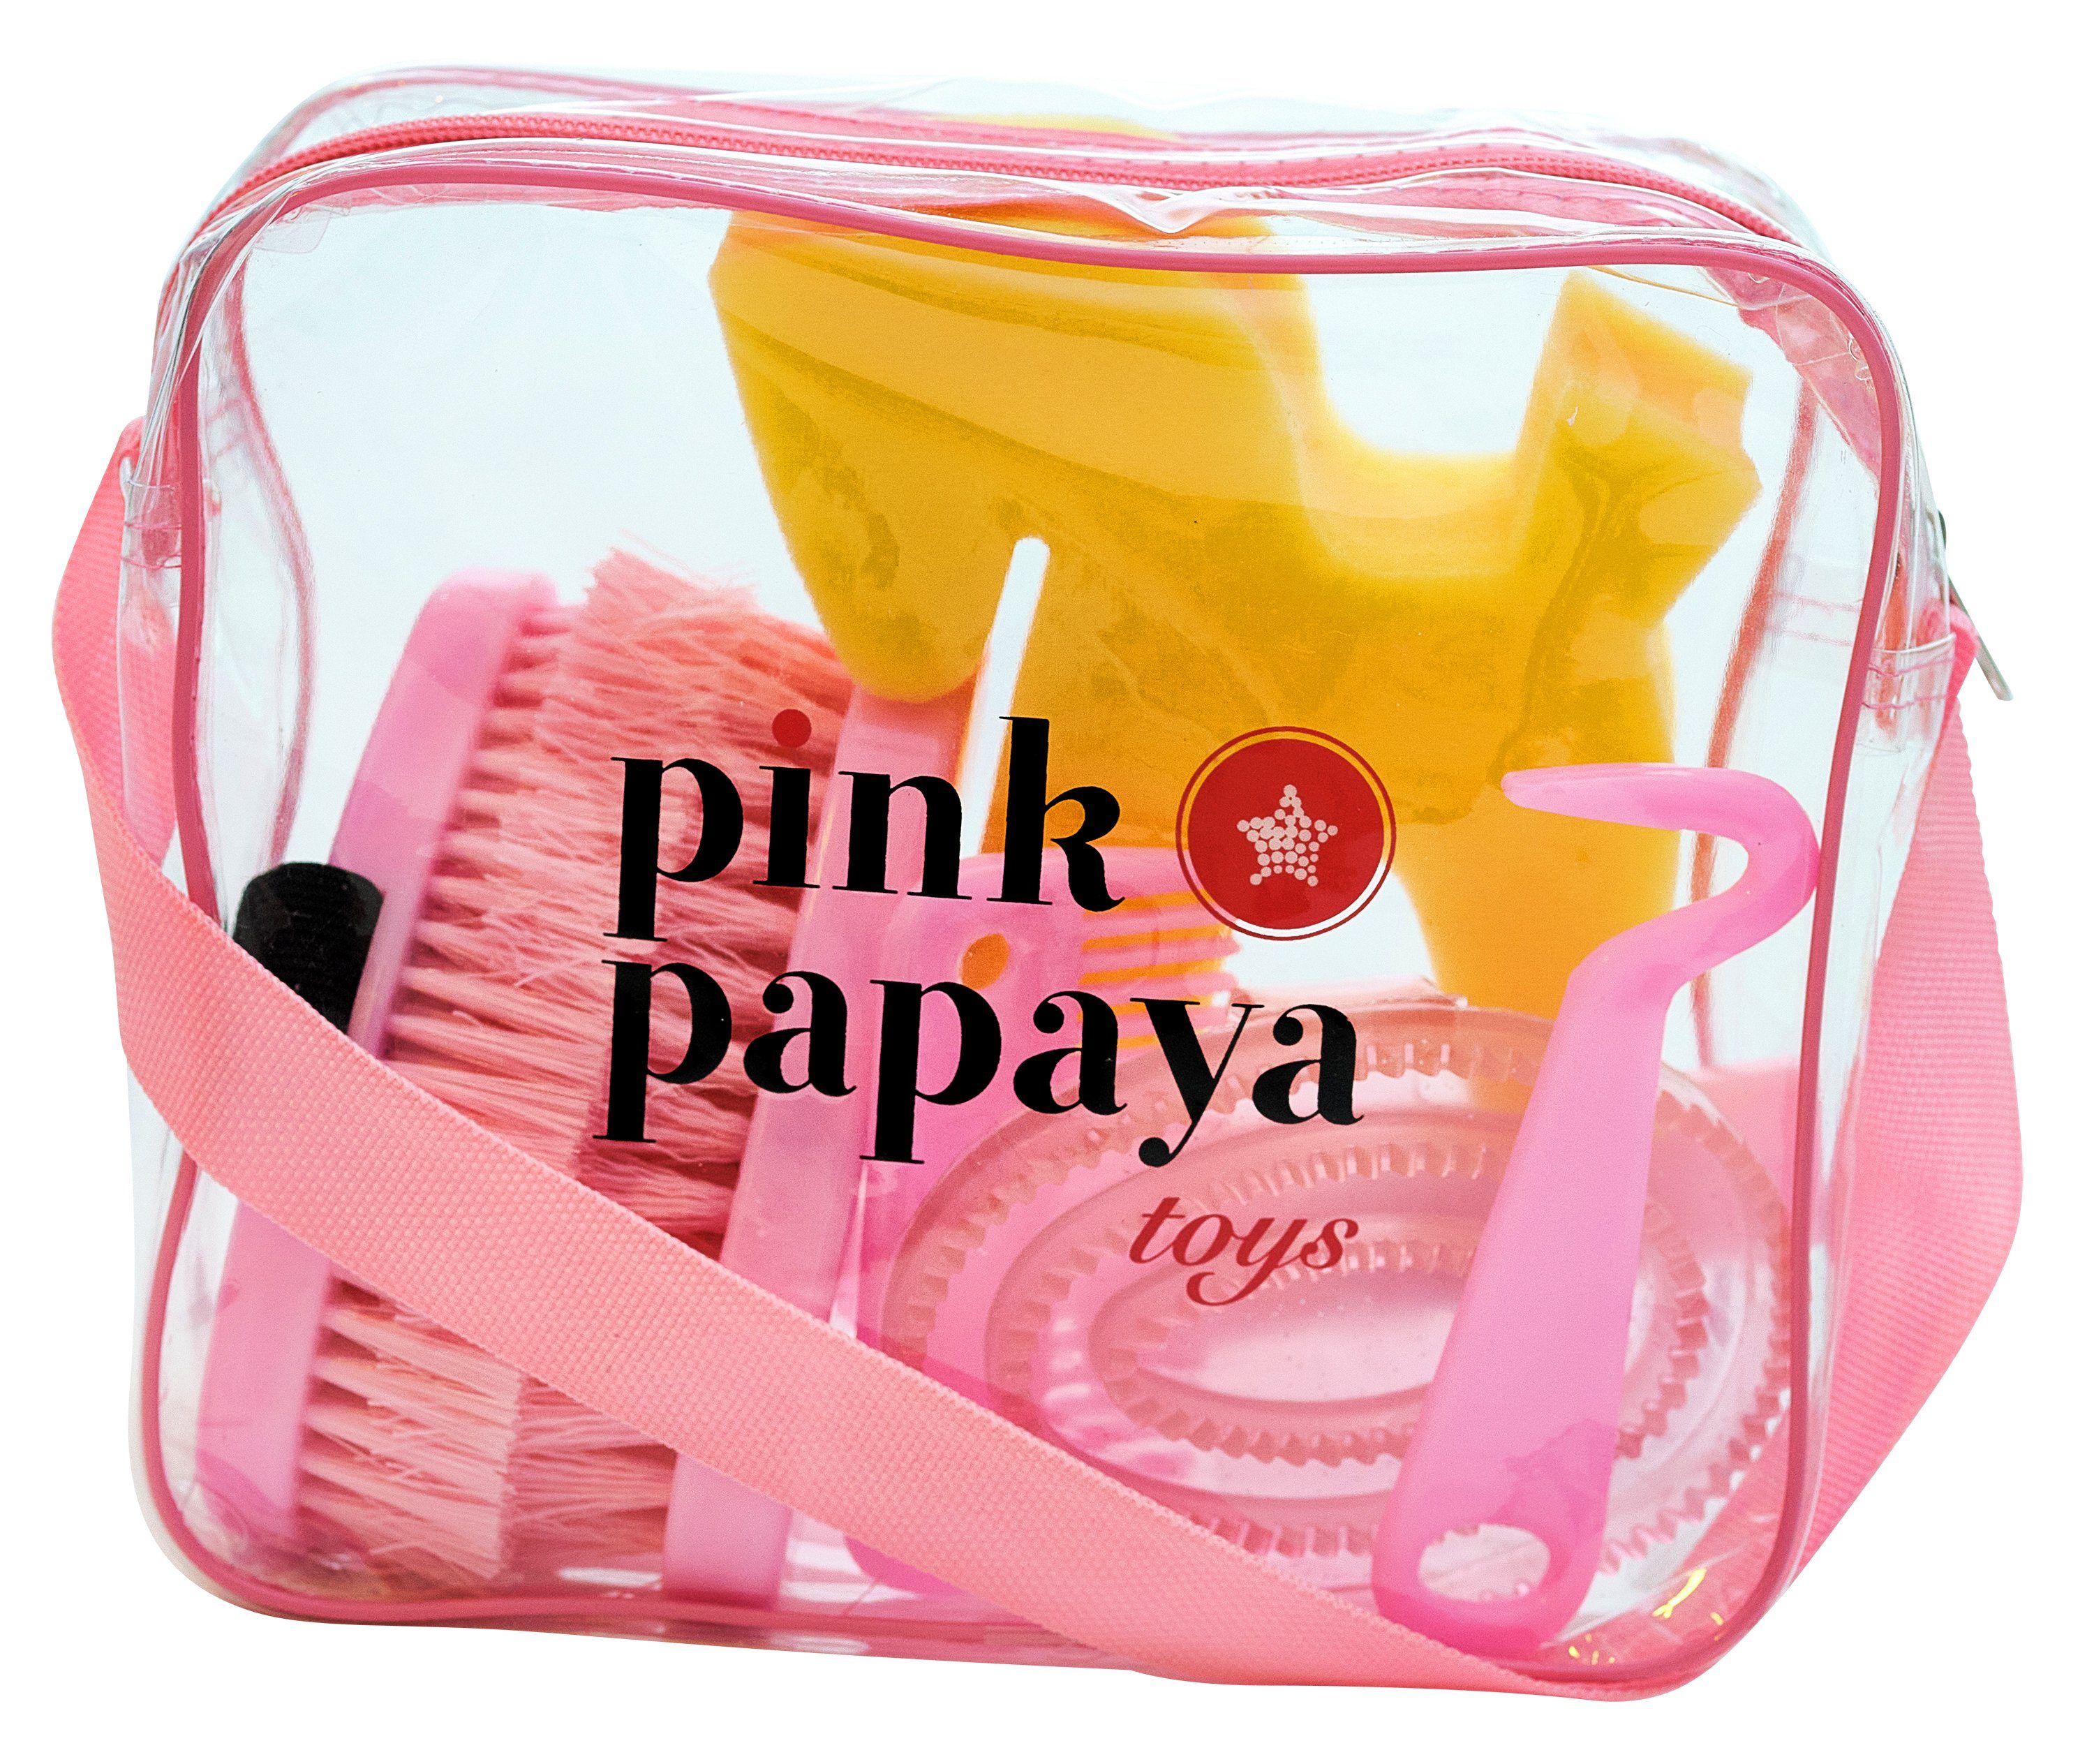 7-teilige Putzbox Kinderspiel Pferde Ergänzung Pony die Papaya für alle Pink, Spiel, ideale Pink Putztasche in "Lexington" Pink Papaya